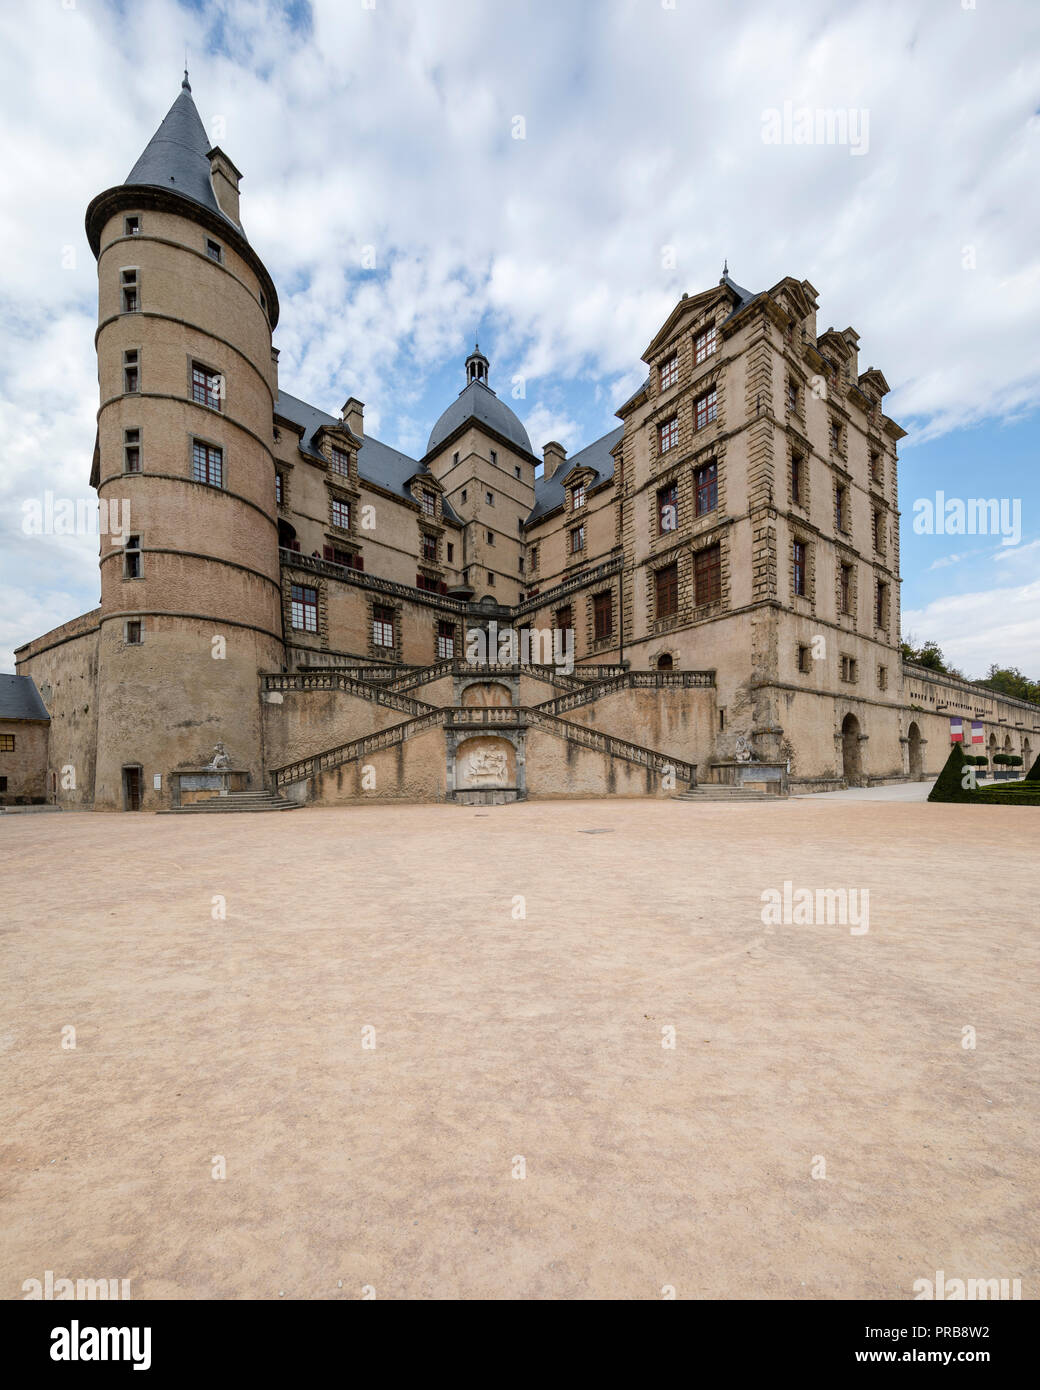 Bresson, Frankreich, 30. September 2018: Chateau de Bresson ist ein berühmtes Schloss der Dauphine Region. Es ist nun das Museum der Französischen Revolution. Stockfoto